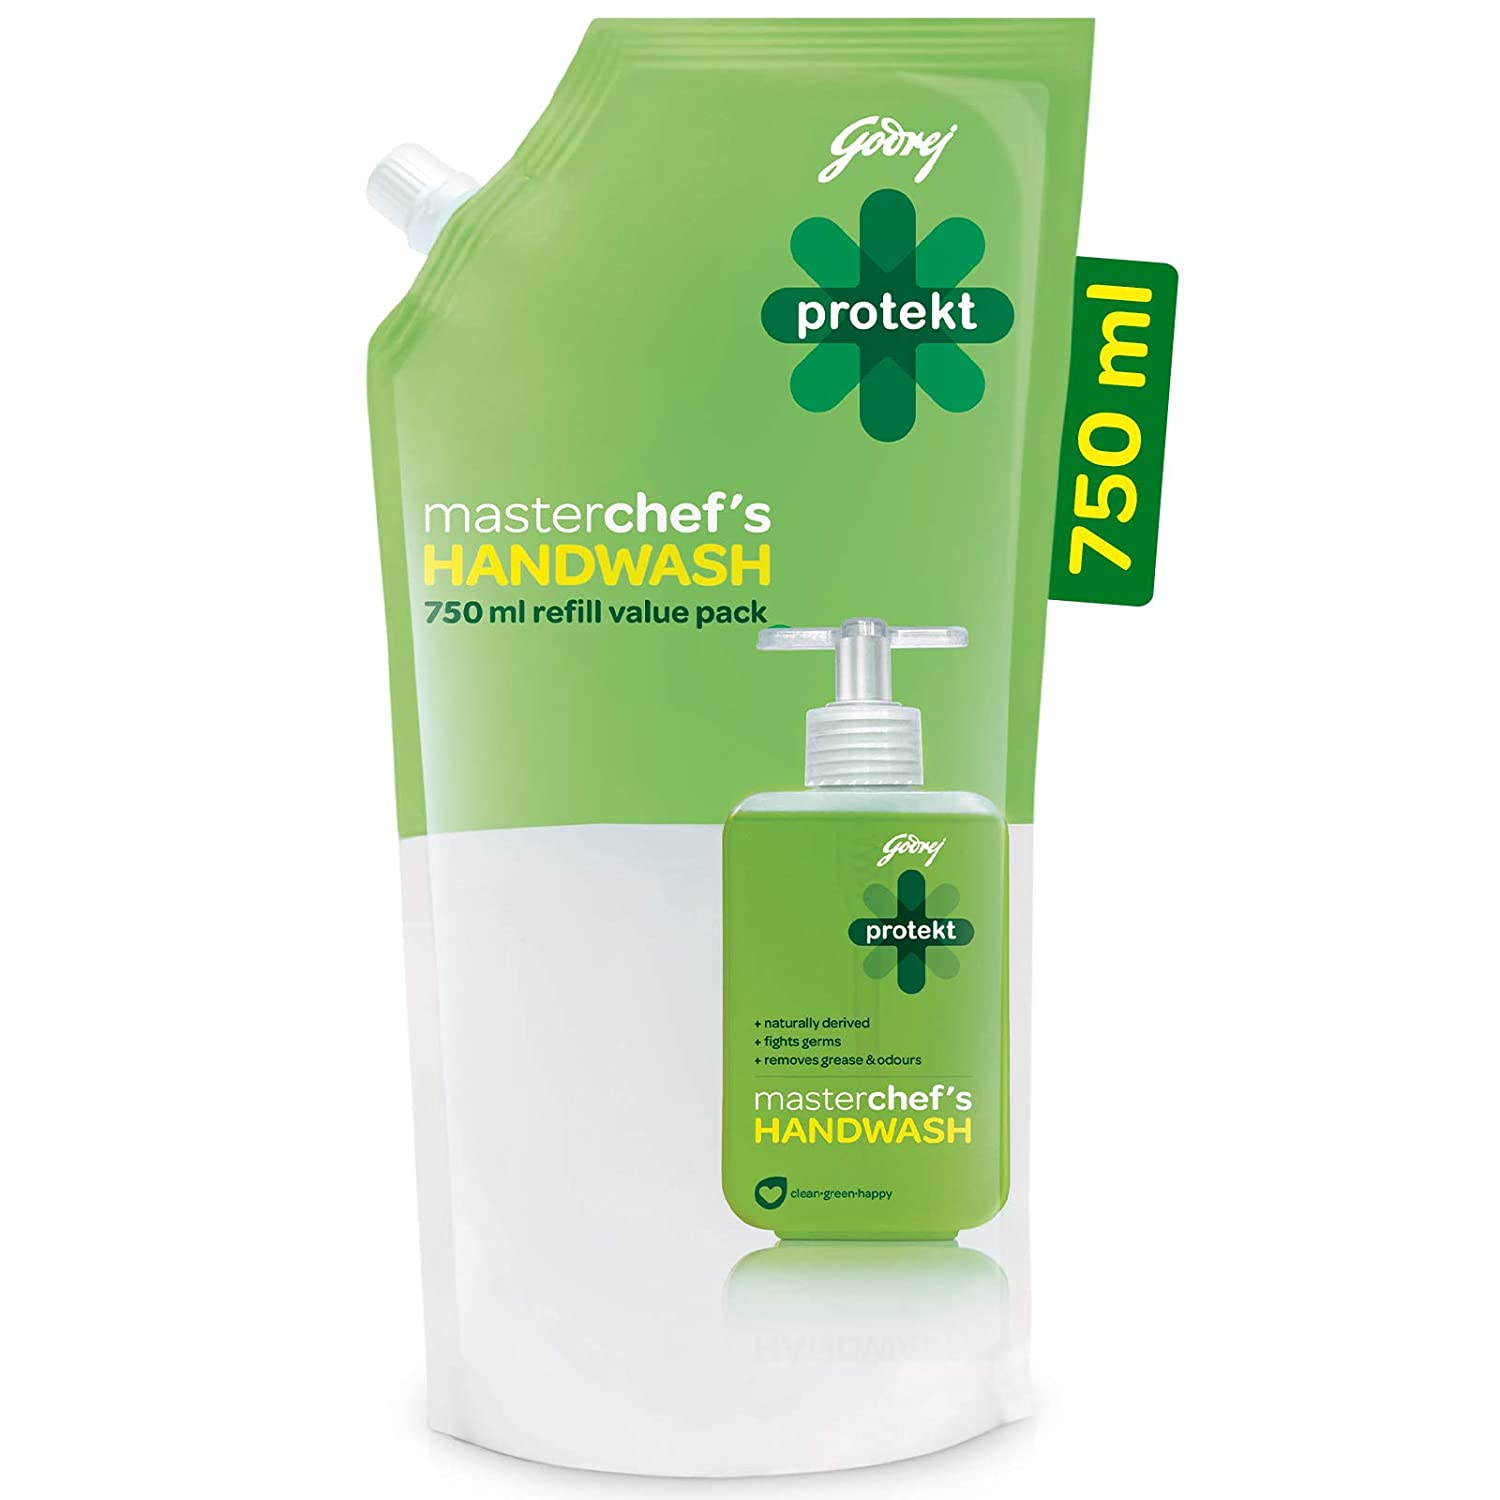 Godrej Protekt Masterchef's Handwash - 750 ml